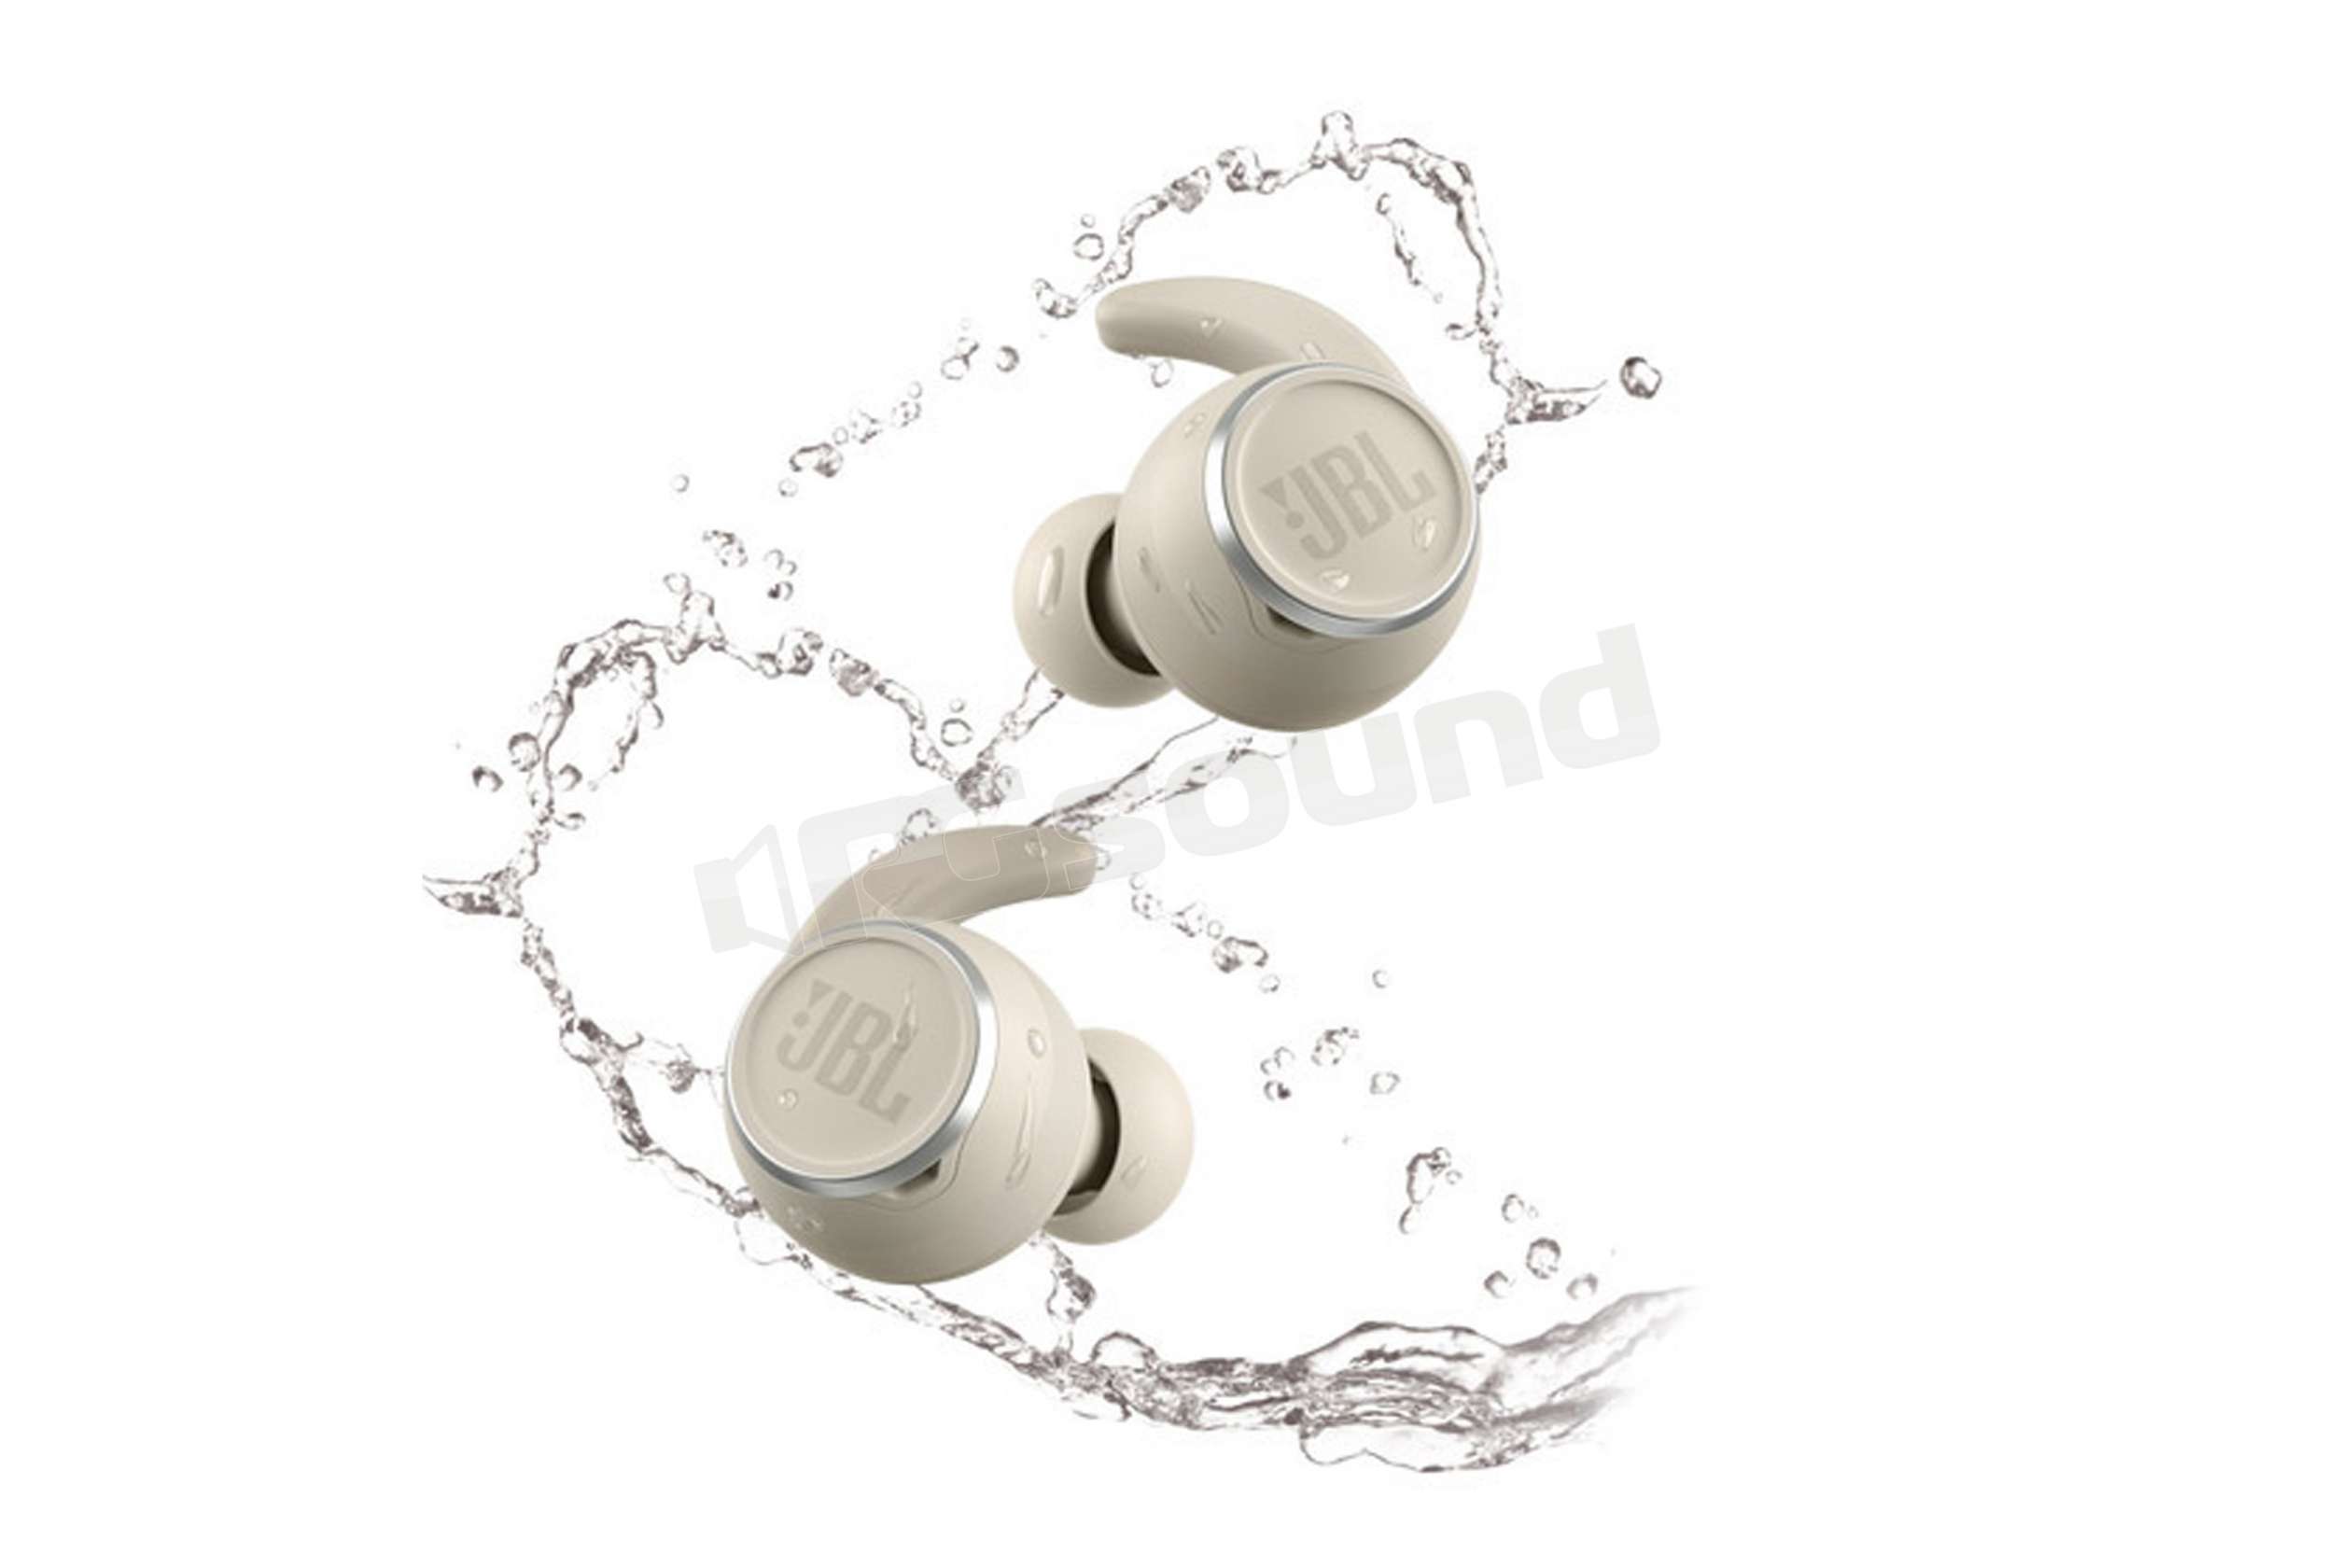 JBL Reflect Mini NC auricolari Bluetooth resistenti ad acqua e sudore